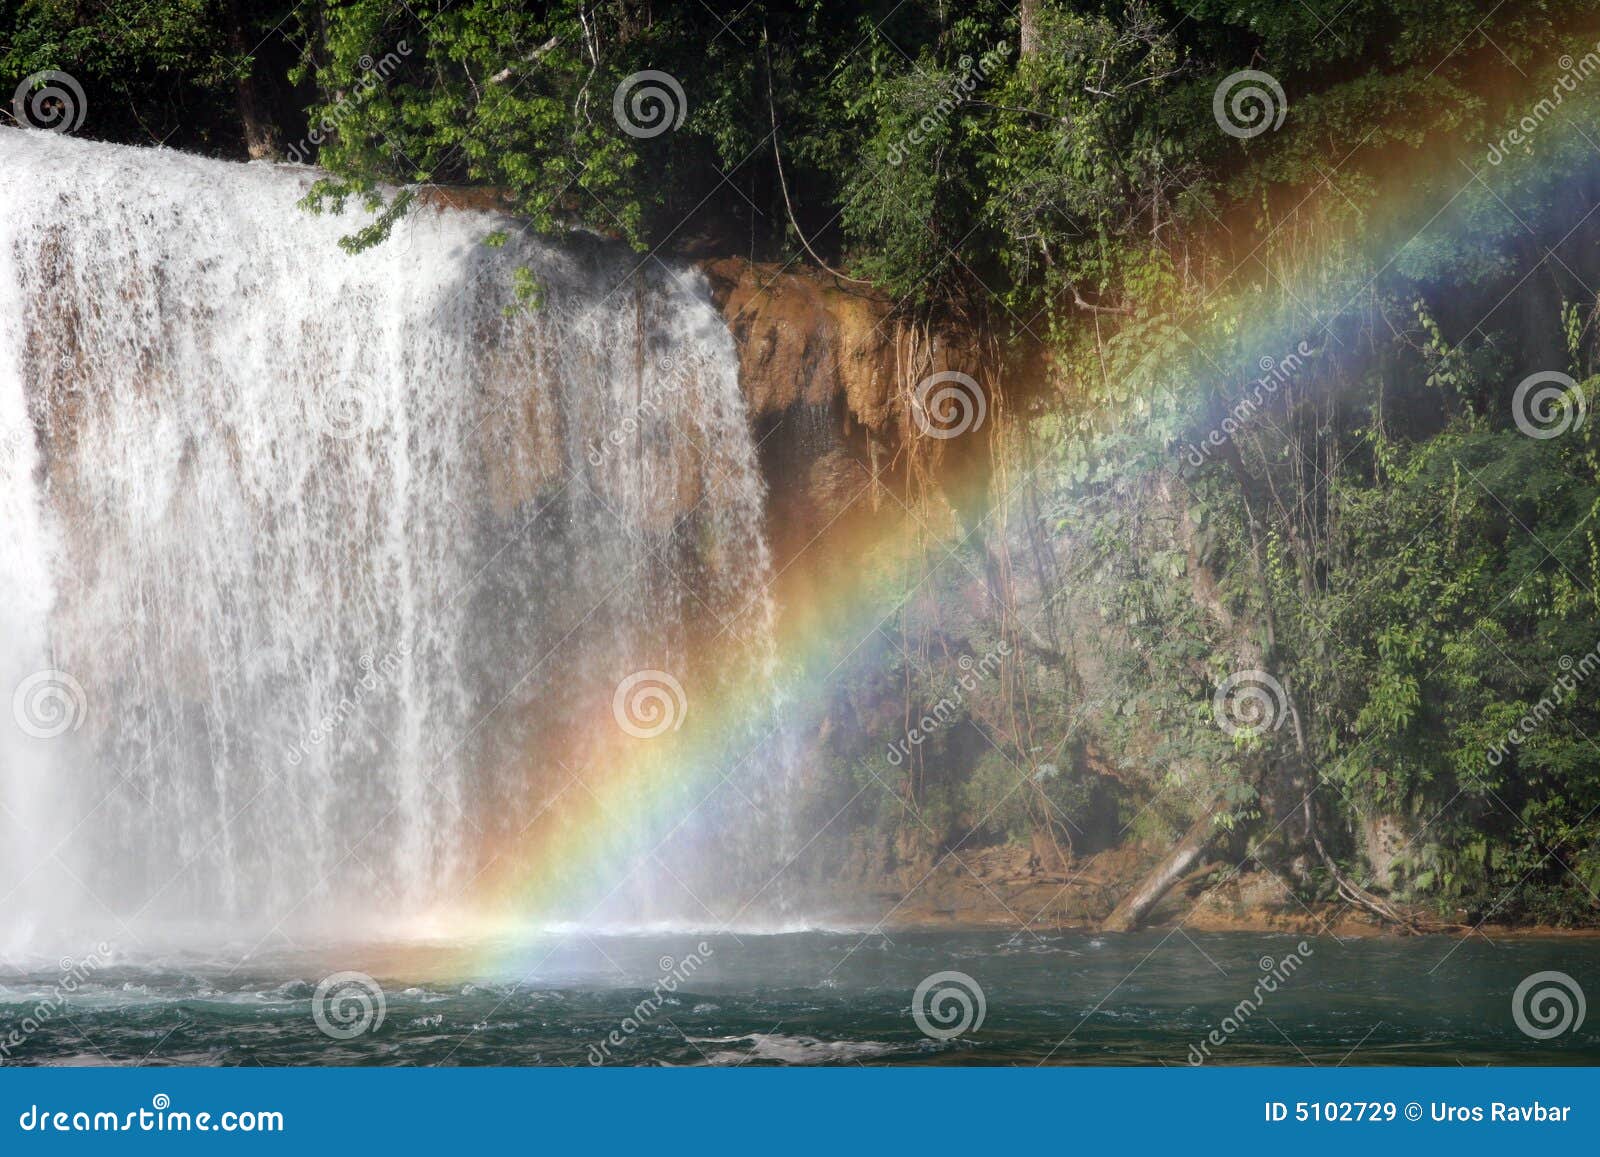 rainbow over the agua azul